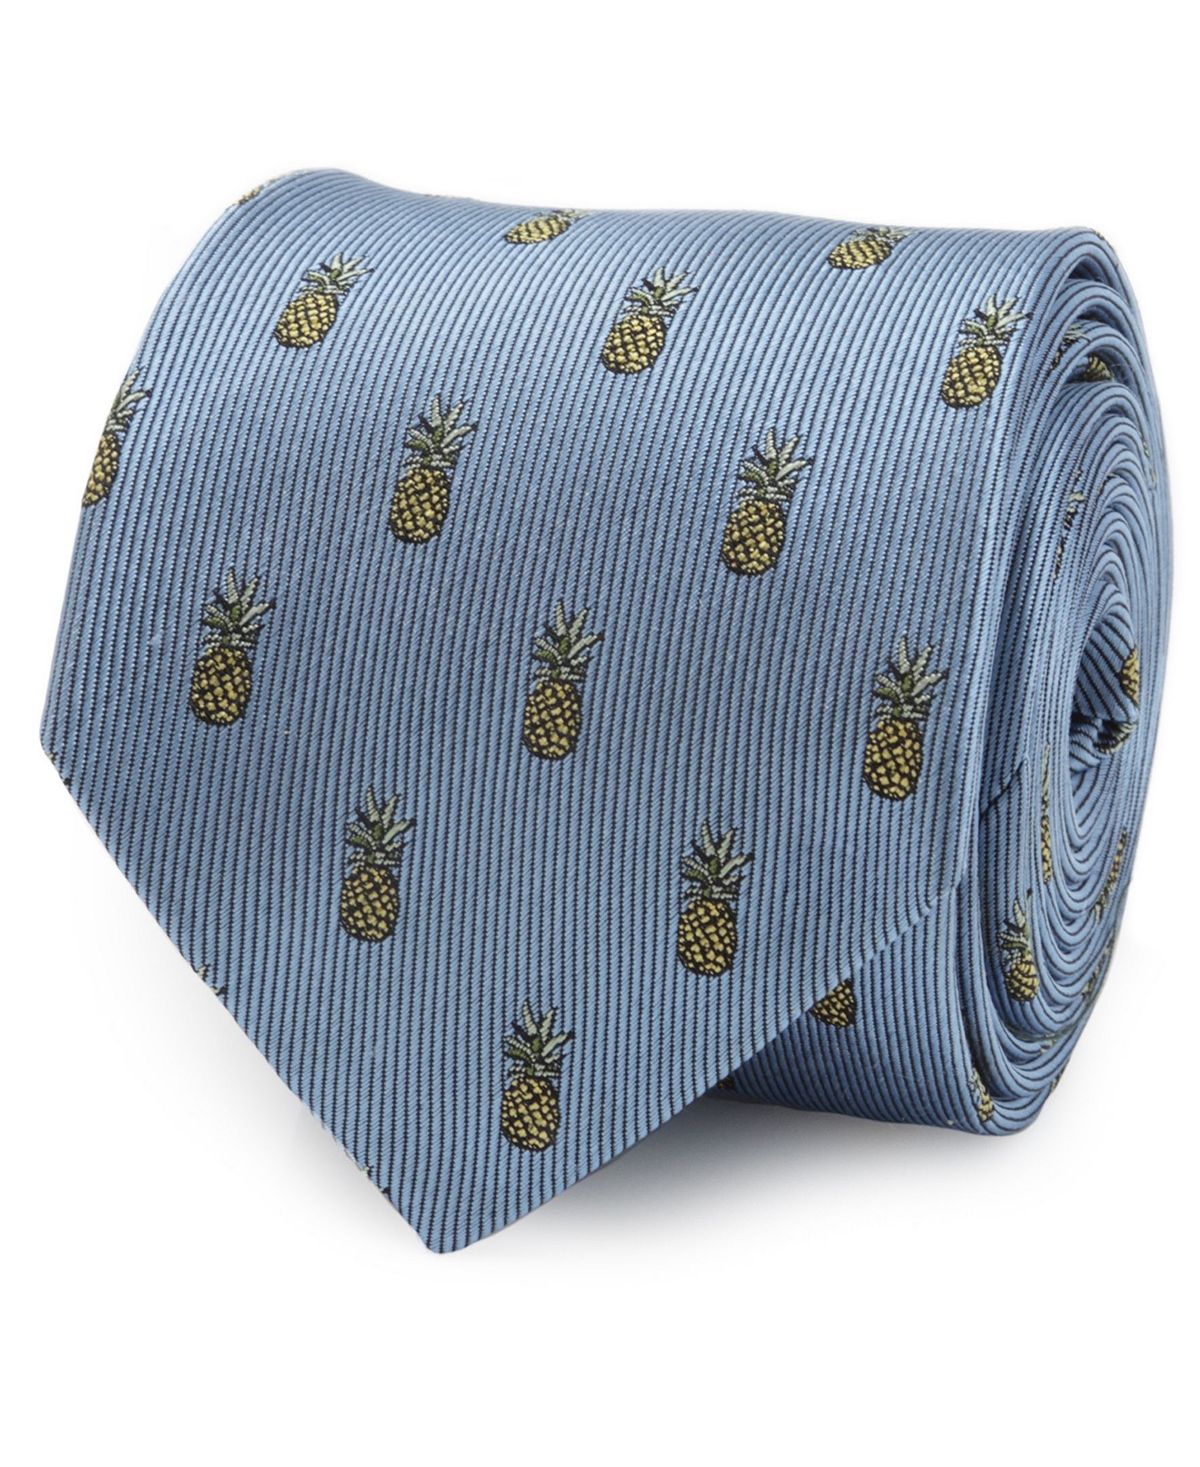 Мужской галстук с ананасом Cufflinks Inc. мужской галстук fleur de lis cufflinks inc